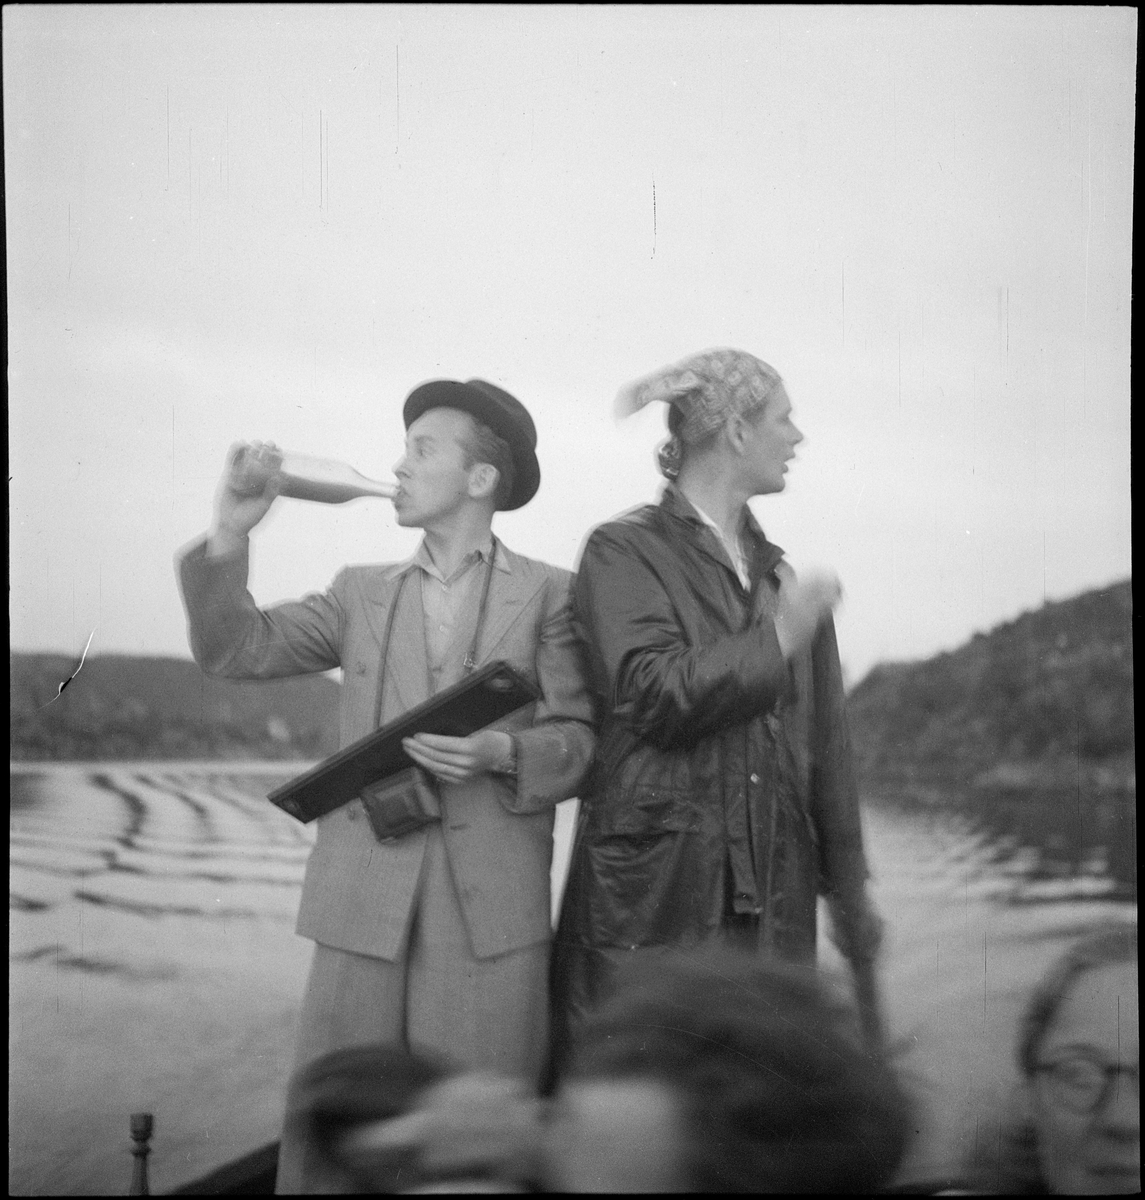 En vennegjeng er samlet for å feire Sankthans i Egersund. De er på båttur og sitter på en brygge vendt mot Lindøya.